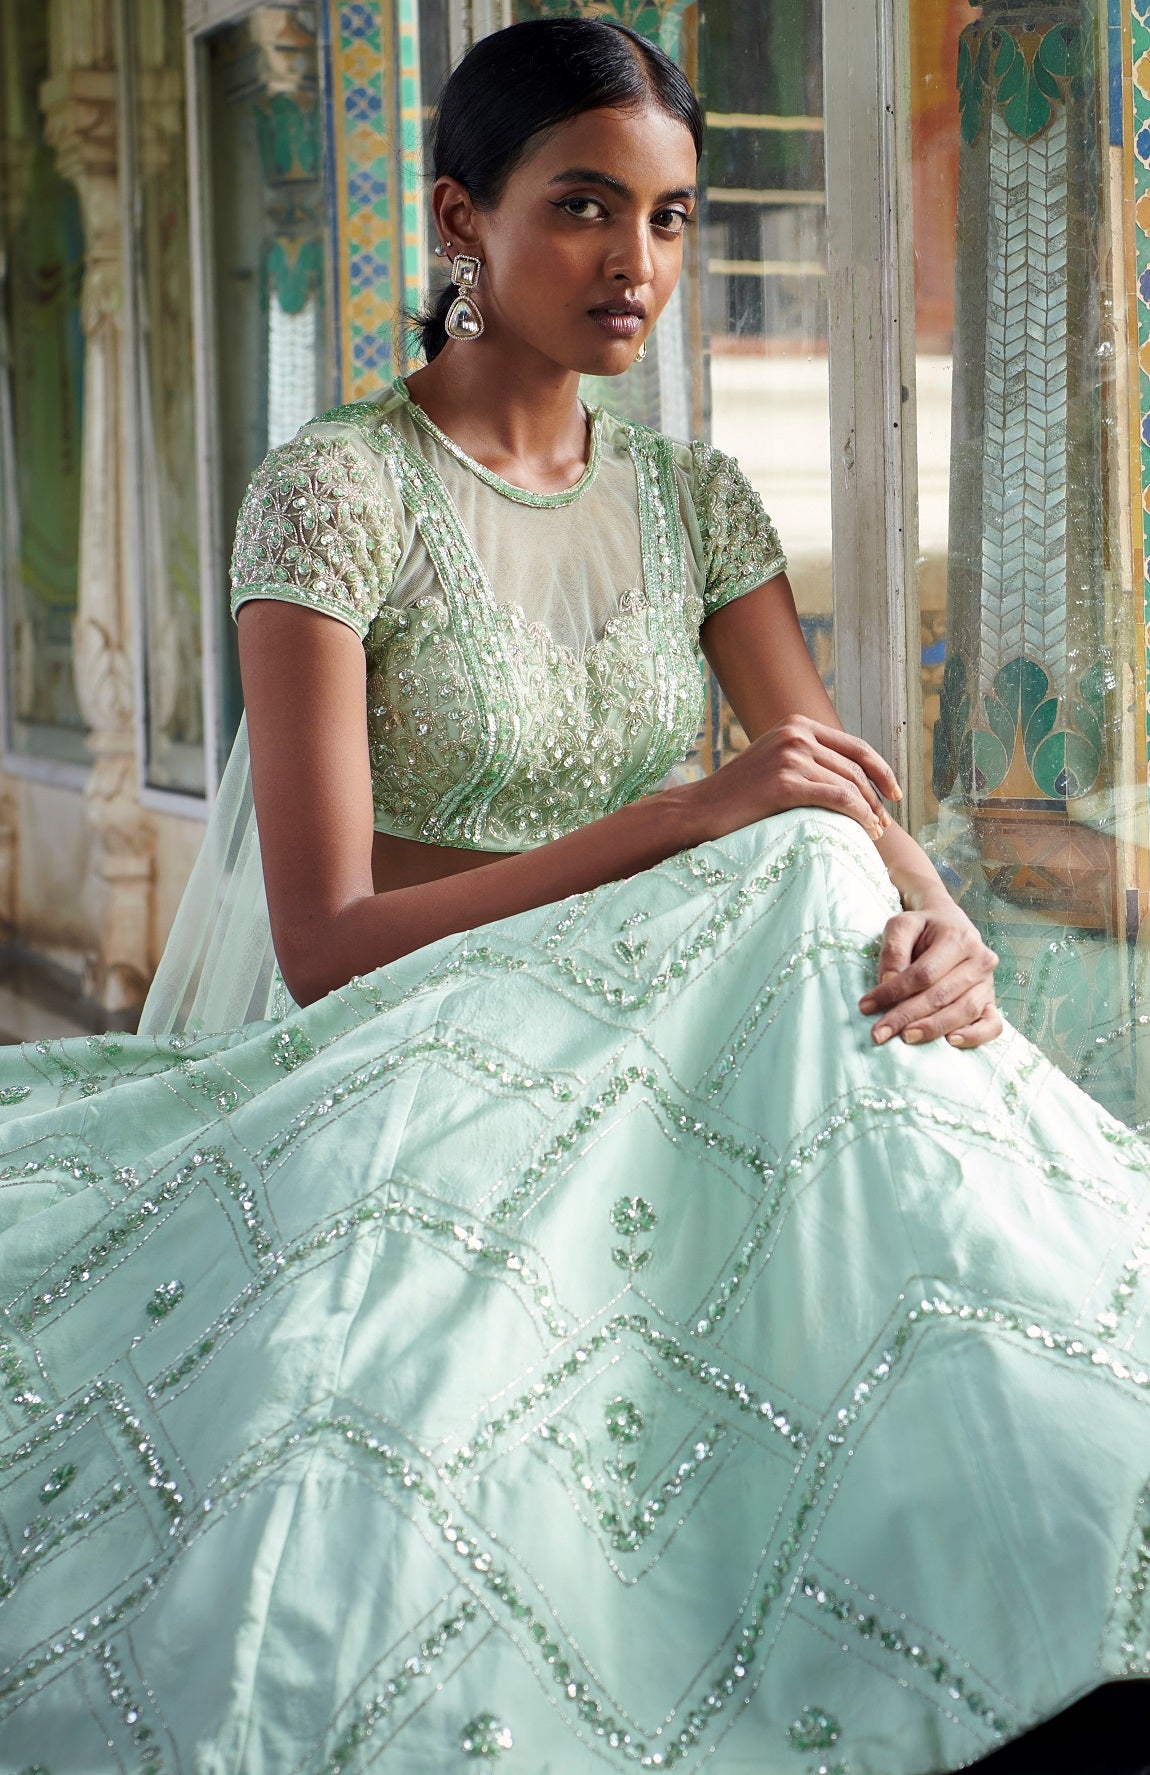 Mint Green Bridal Lehenga - Elegance and tradition wrapped in one stunning lehenga. #IndianBridalLehenga